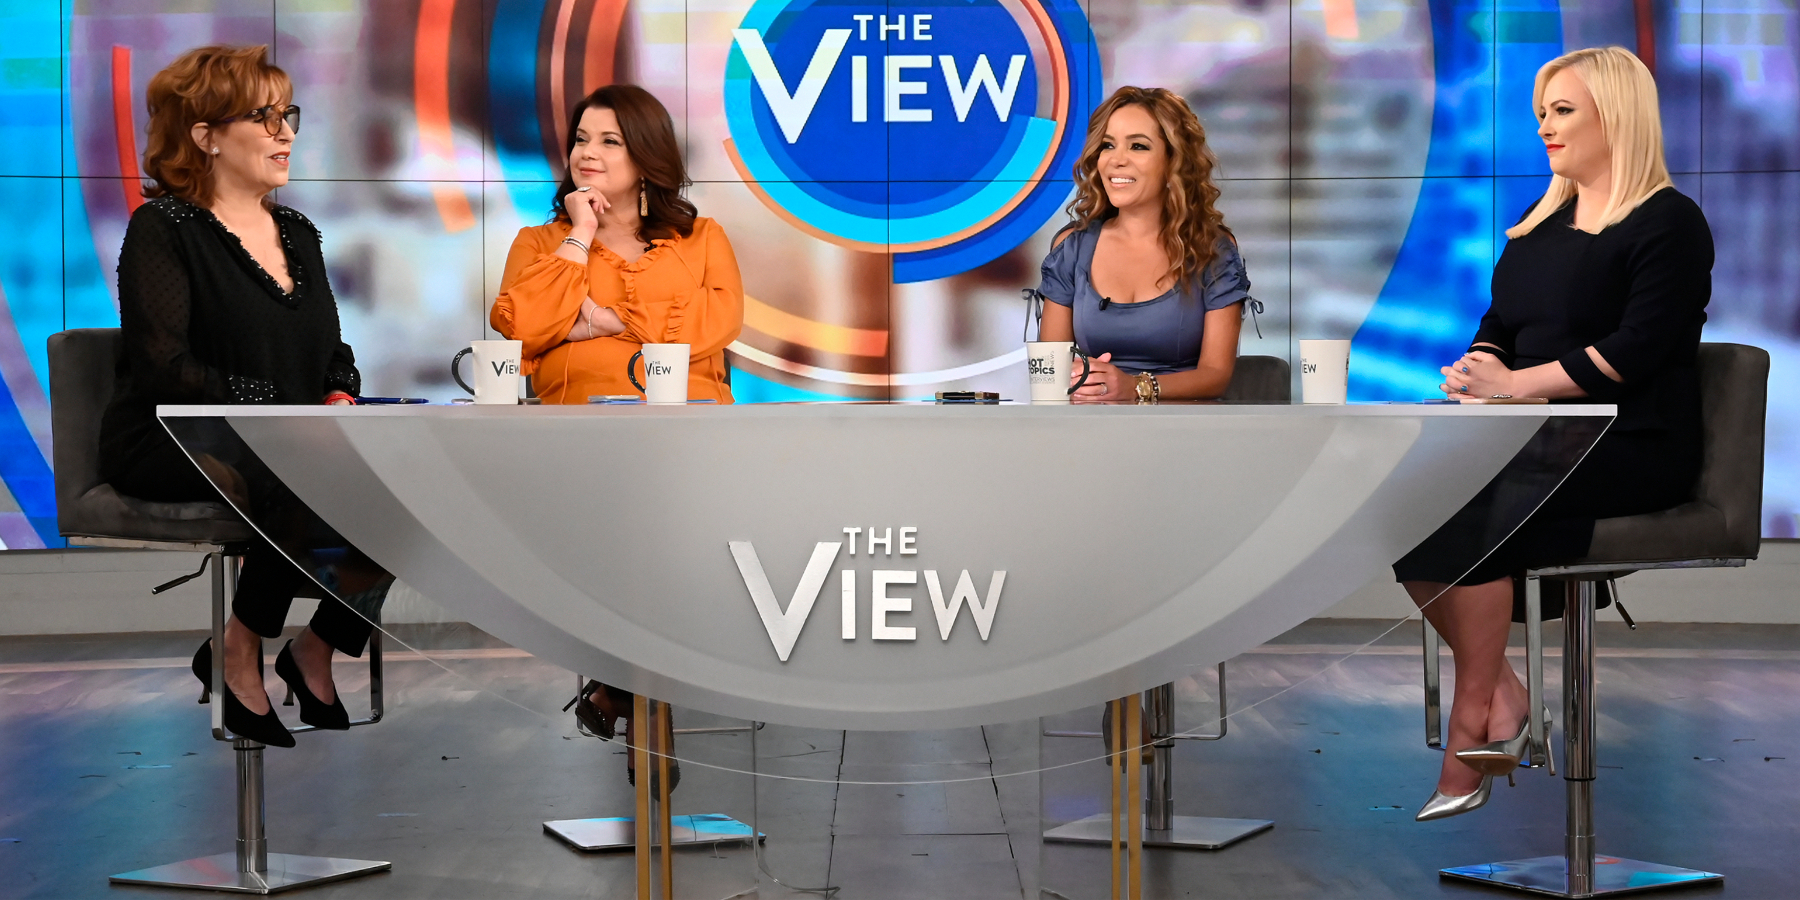 'The View' cast in 2019 included Joy Behar, Ana Navarro, Sunny Hostin, and Meghan McCain.